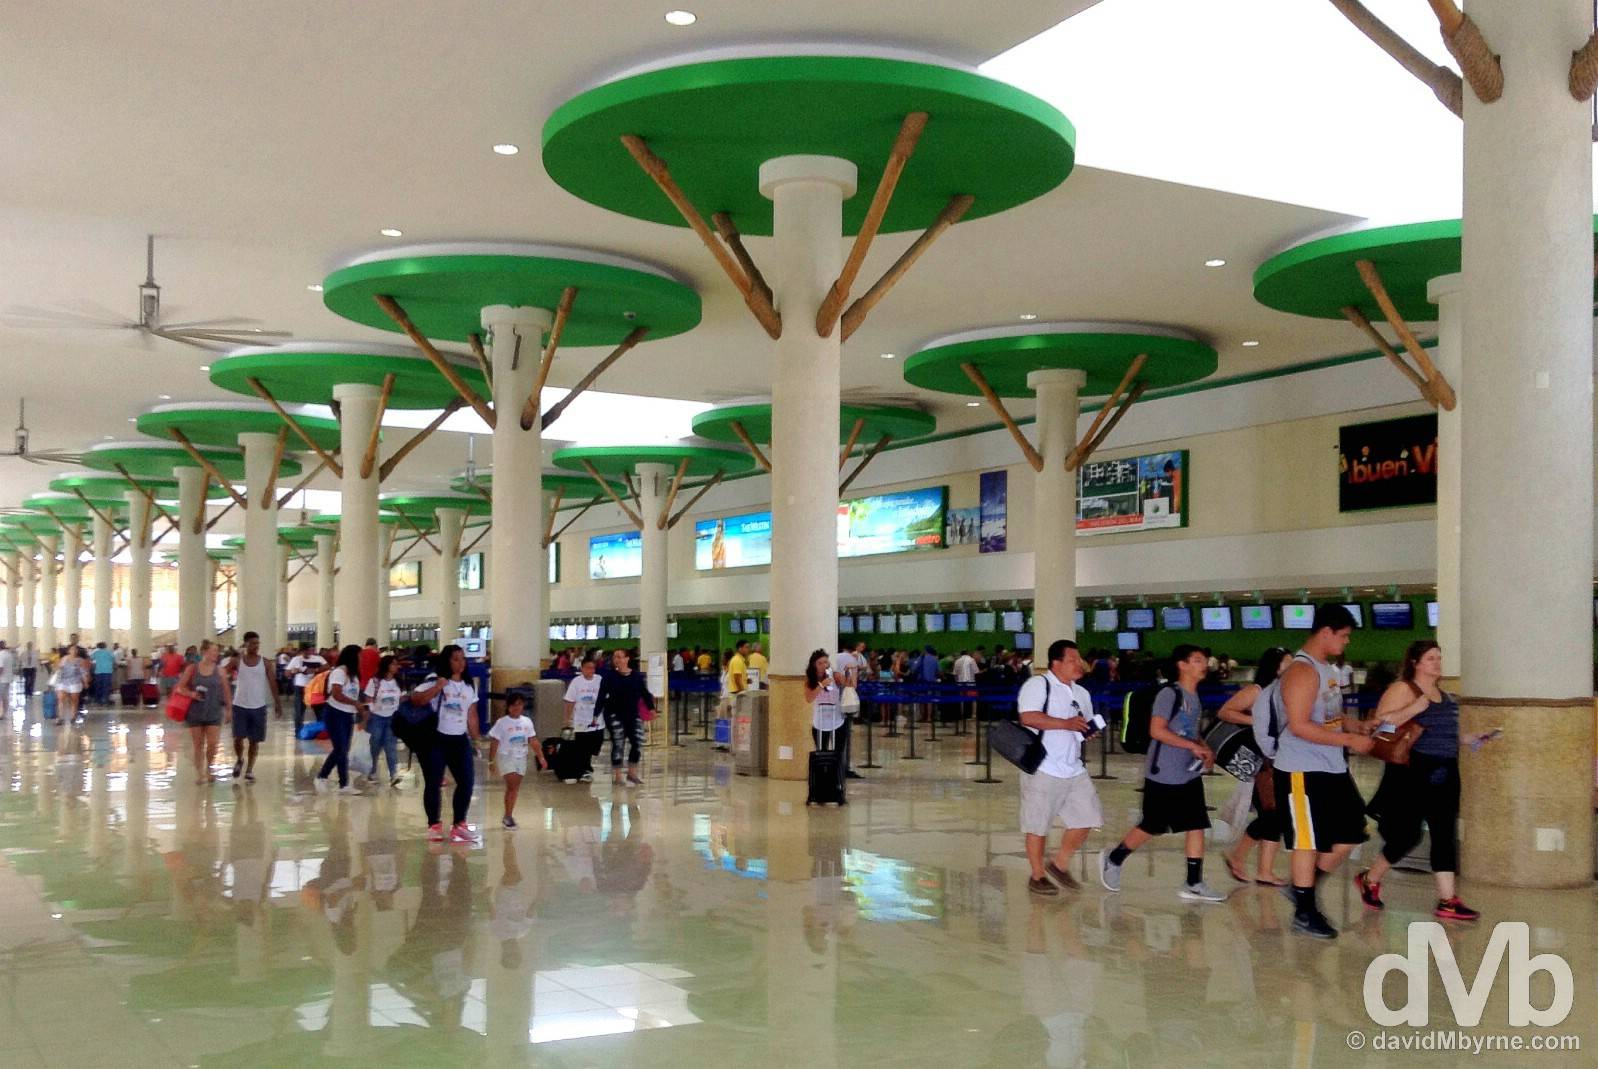 Аэропорт пунта кана - онлайн табло прилета и вылета, официальный сайт, расписание рейсов